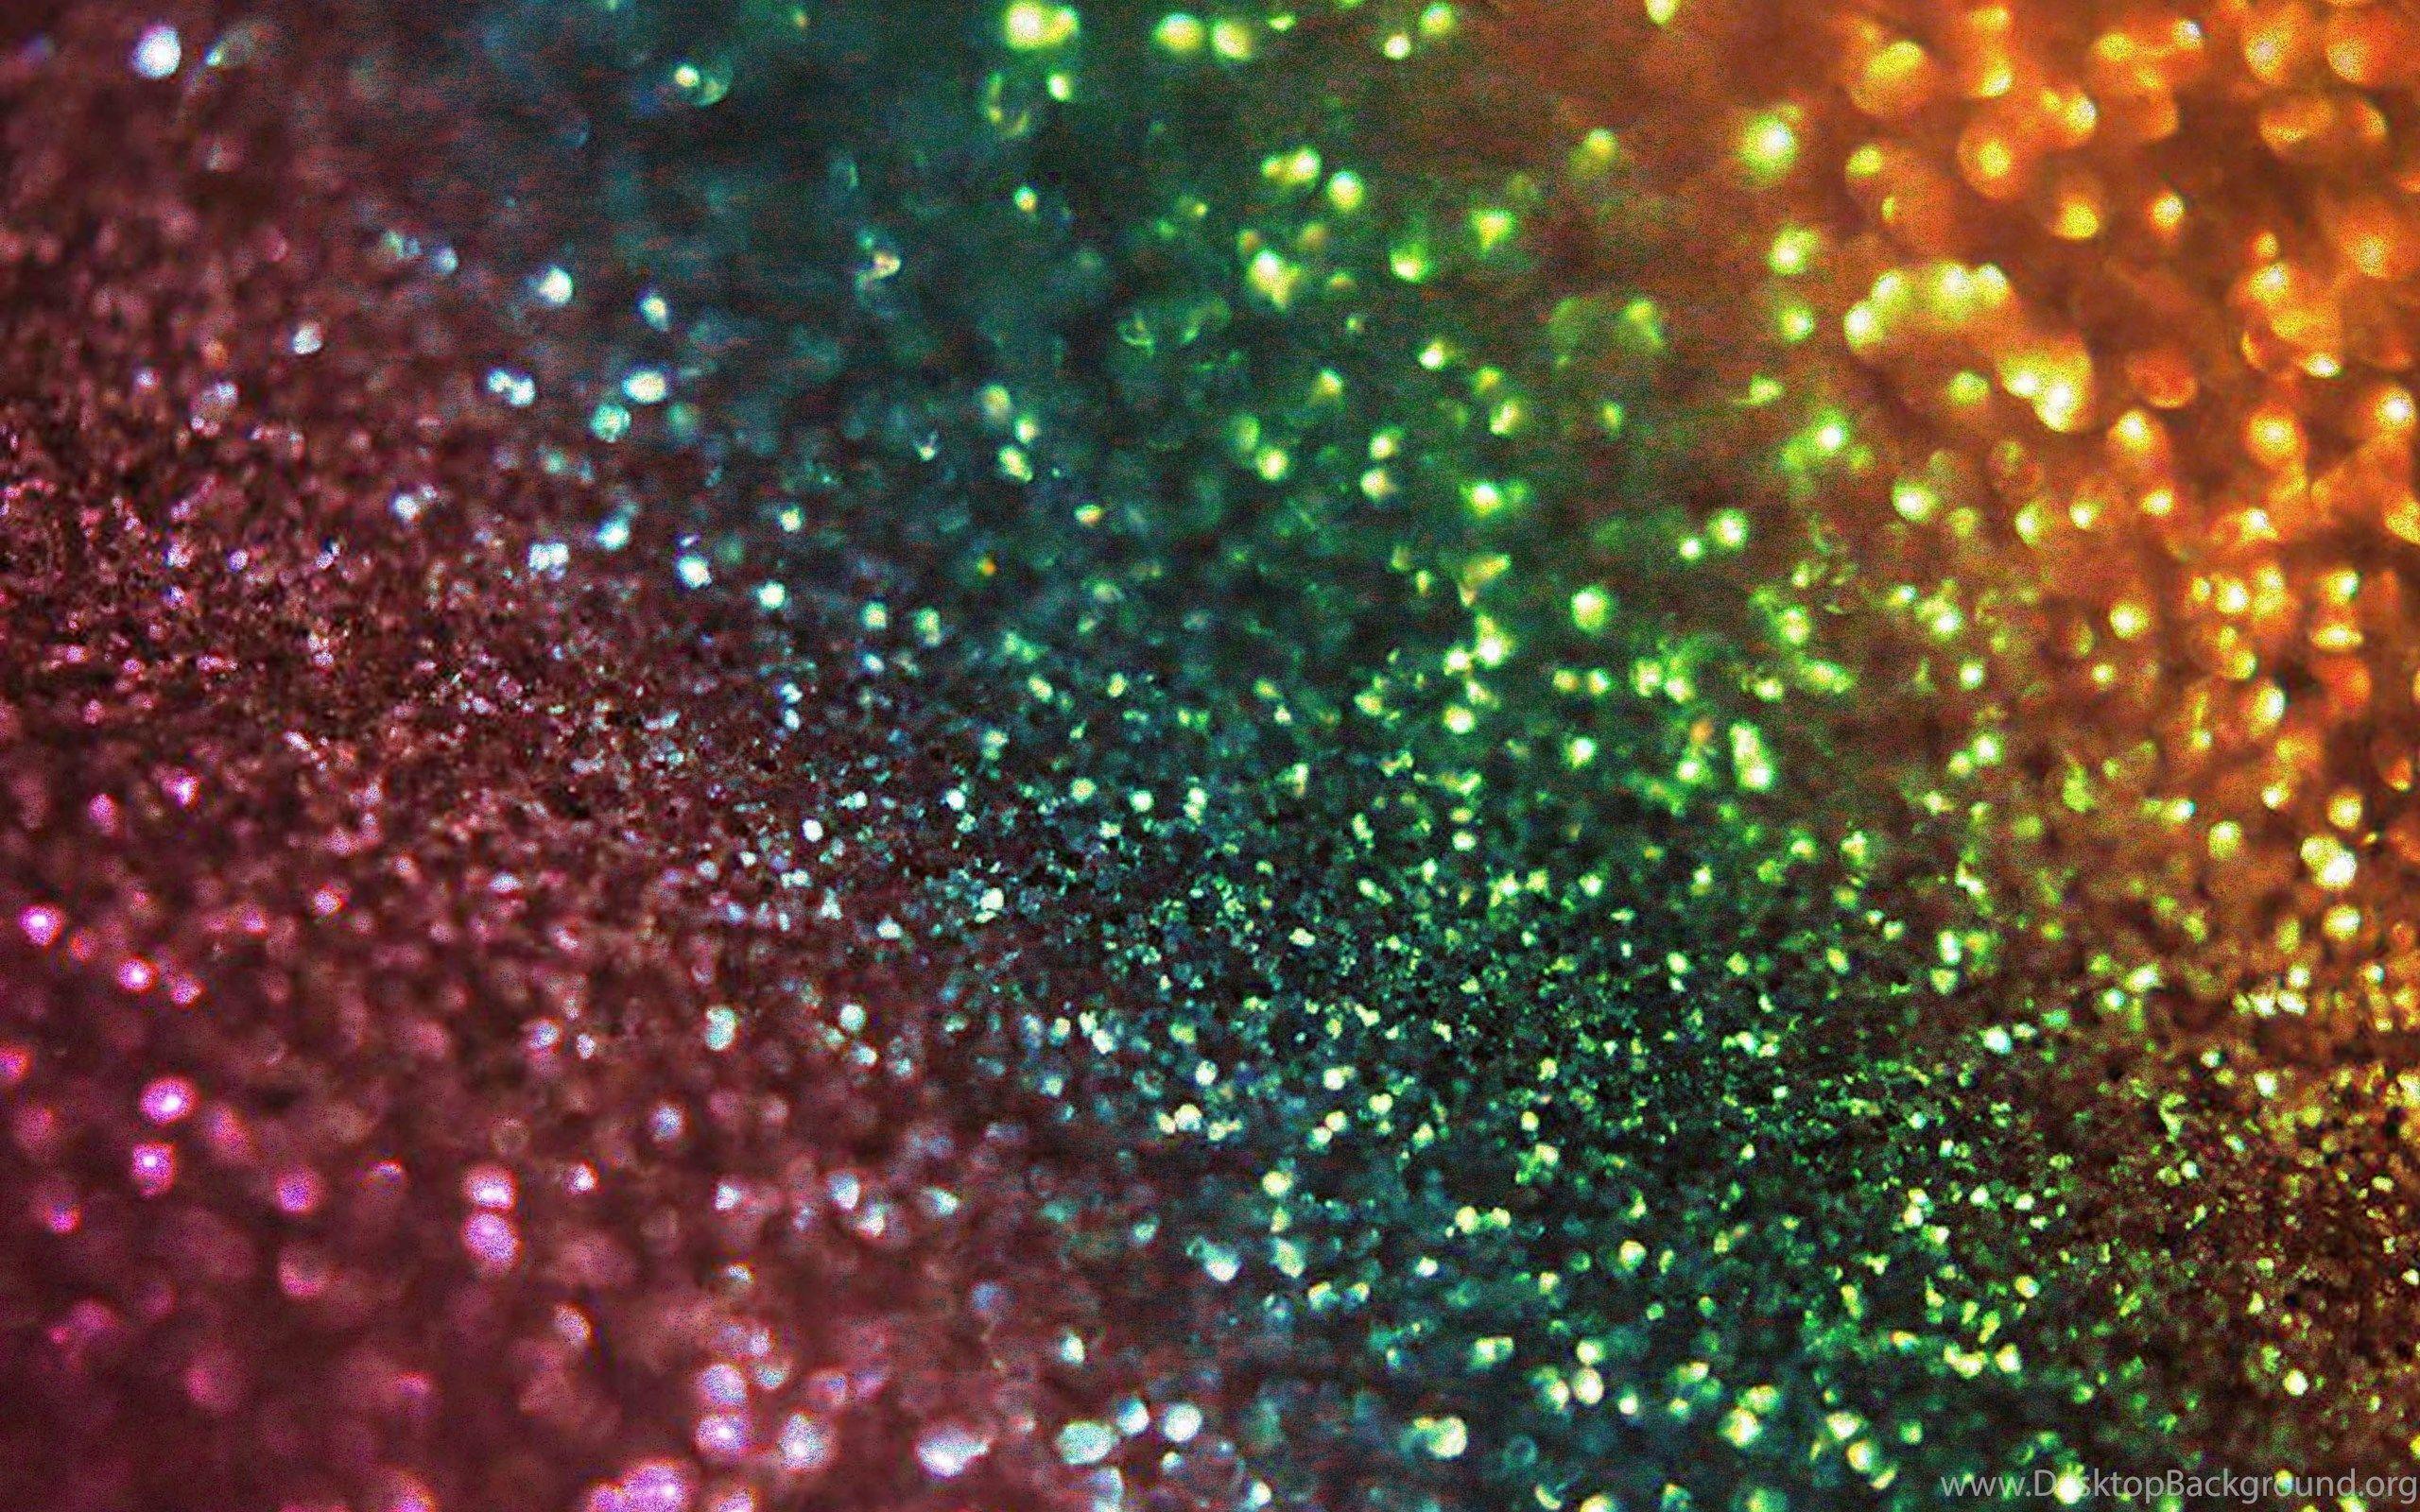 rainbow sparkle